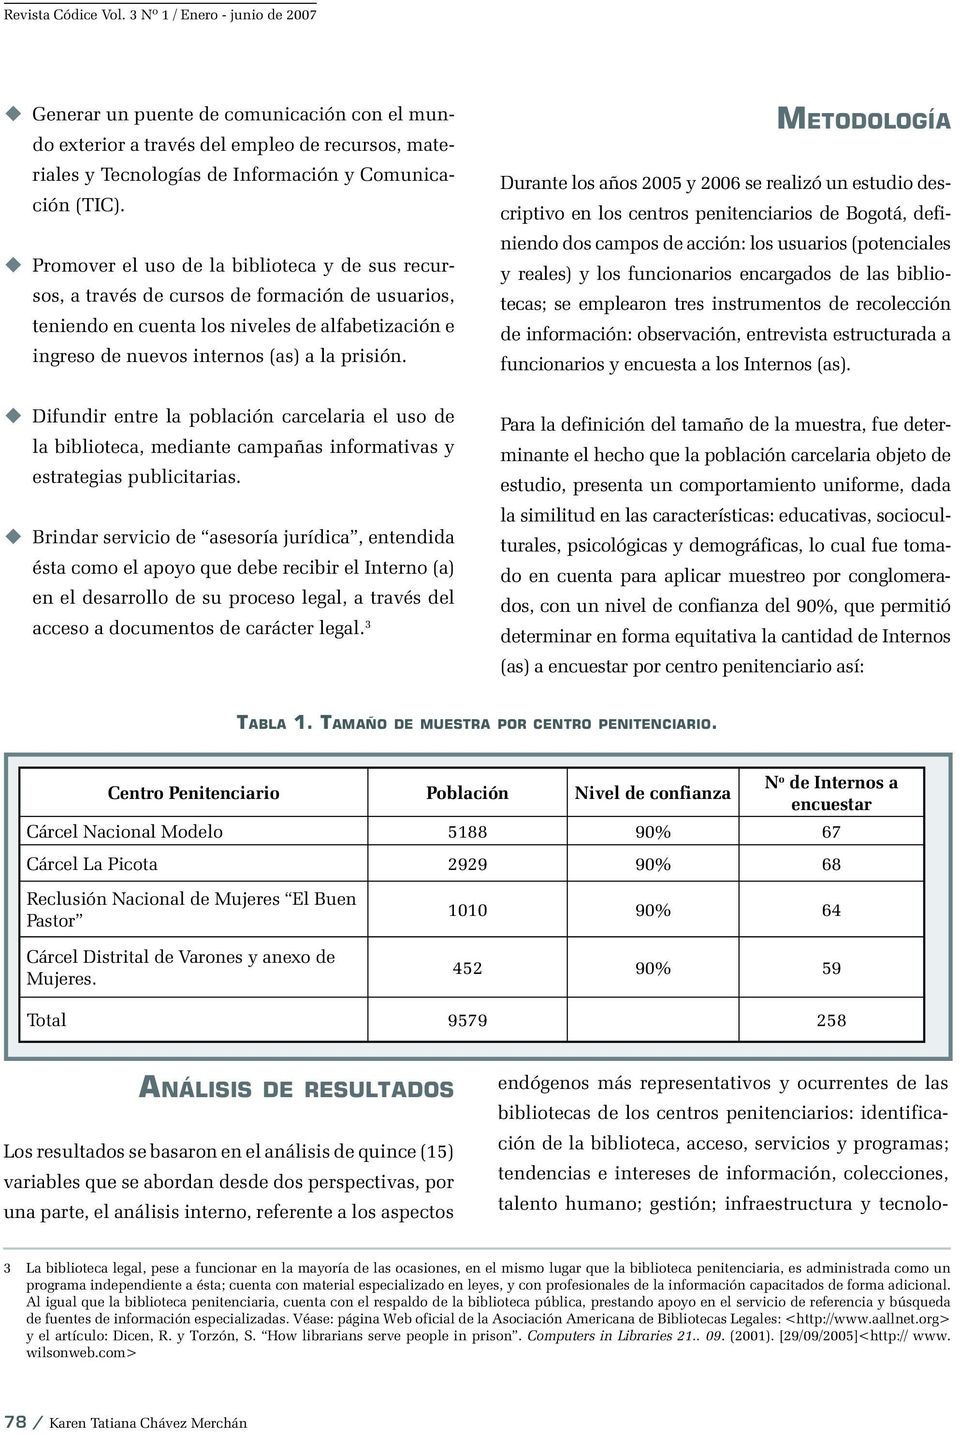 METODOLOGÍA Durante los años 2005 y 2006 se realizó un estudio descriptivo en los centros penitenciarios de Bogotá, definiendo dos campos de acción: los usuarios (potenciales y reales) y los